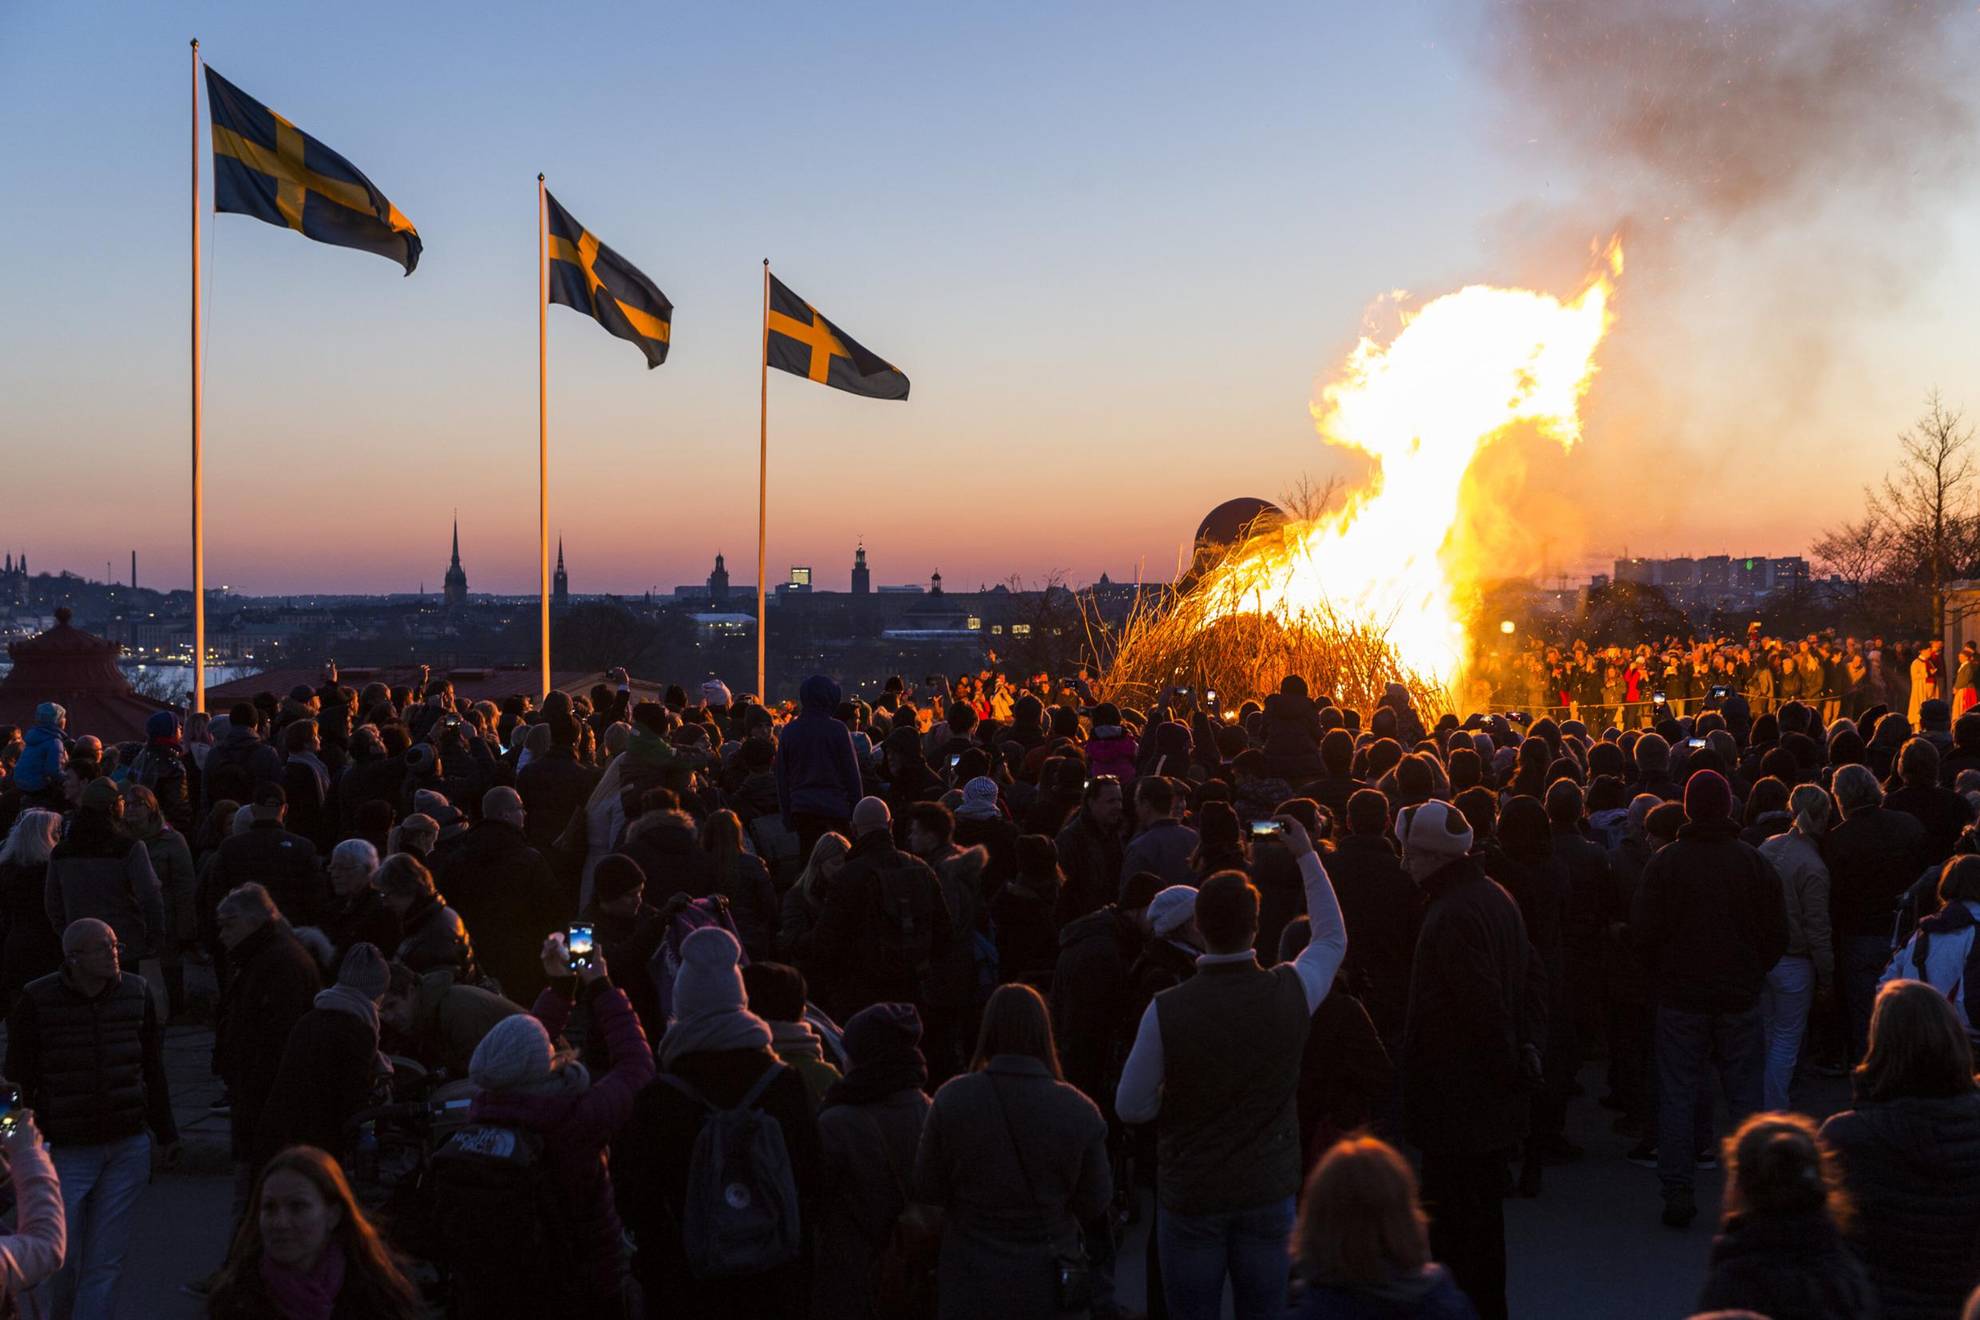 Des gens se sont rassemblés autour d'un feu de joie pour célébrer la nuit de Walpurgis. Trois drapeaux suédois flottent au vent.